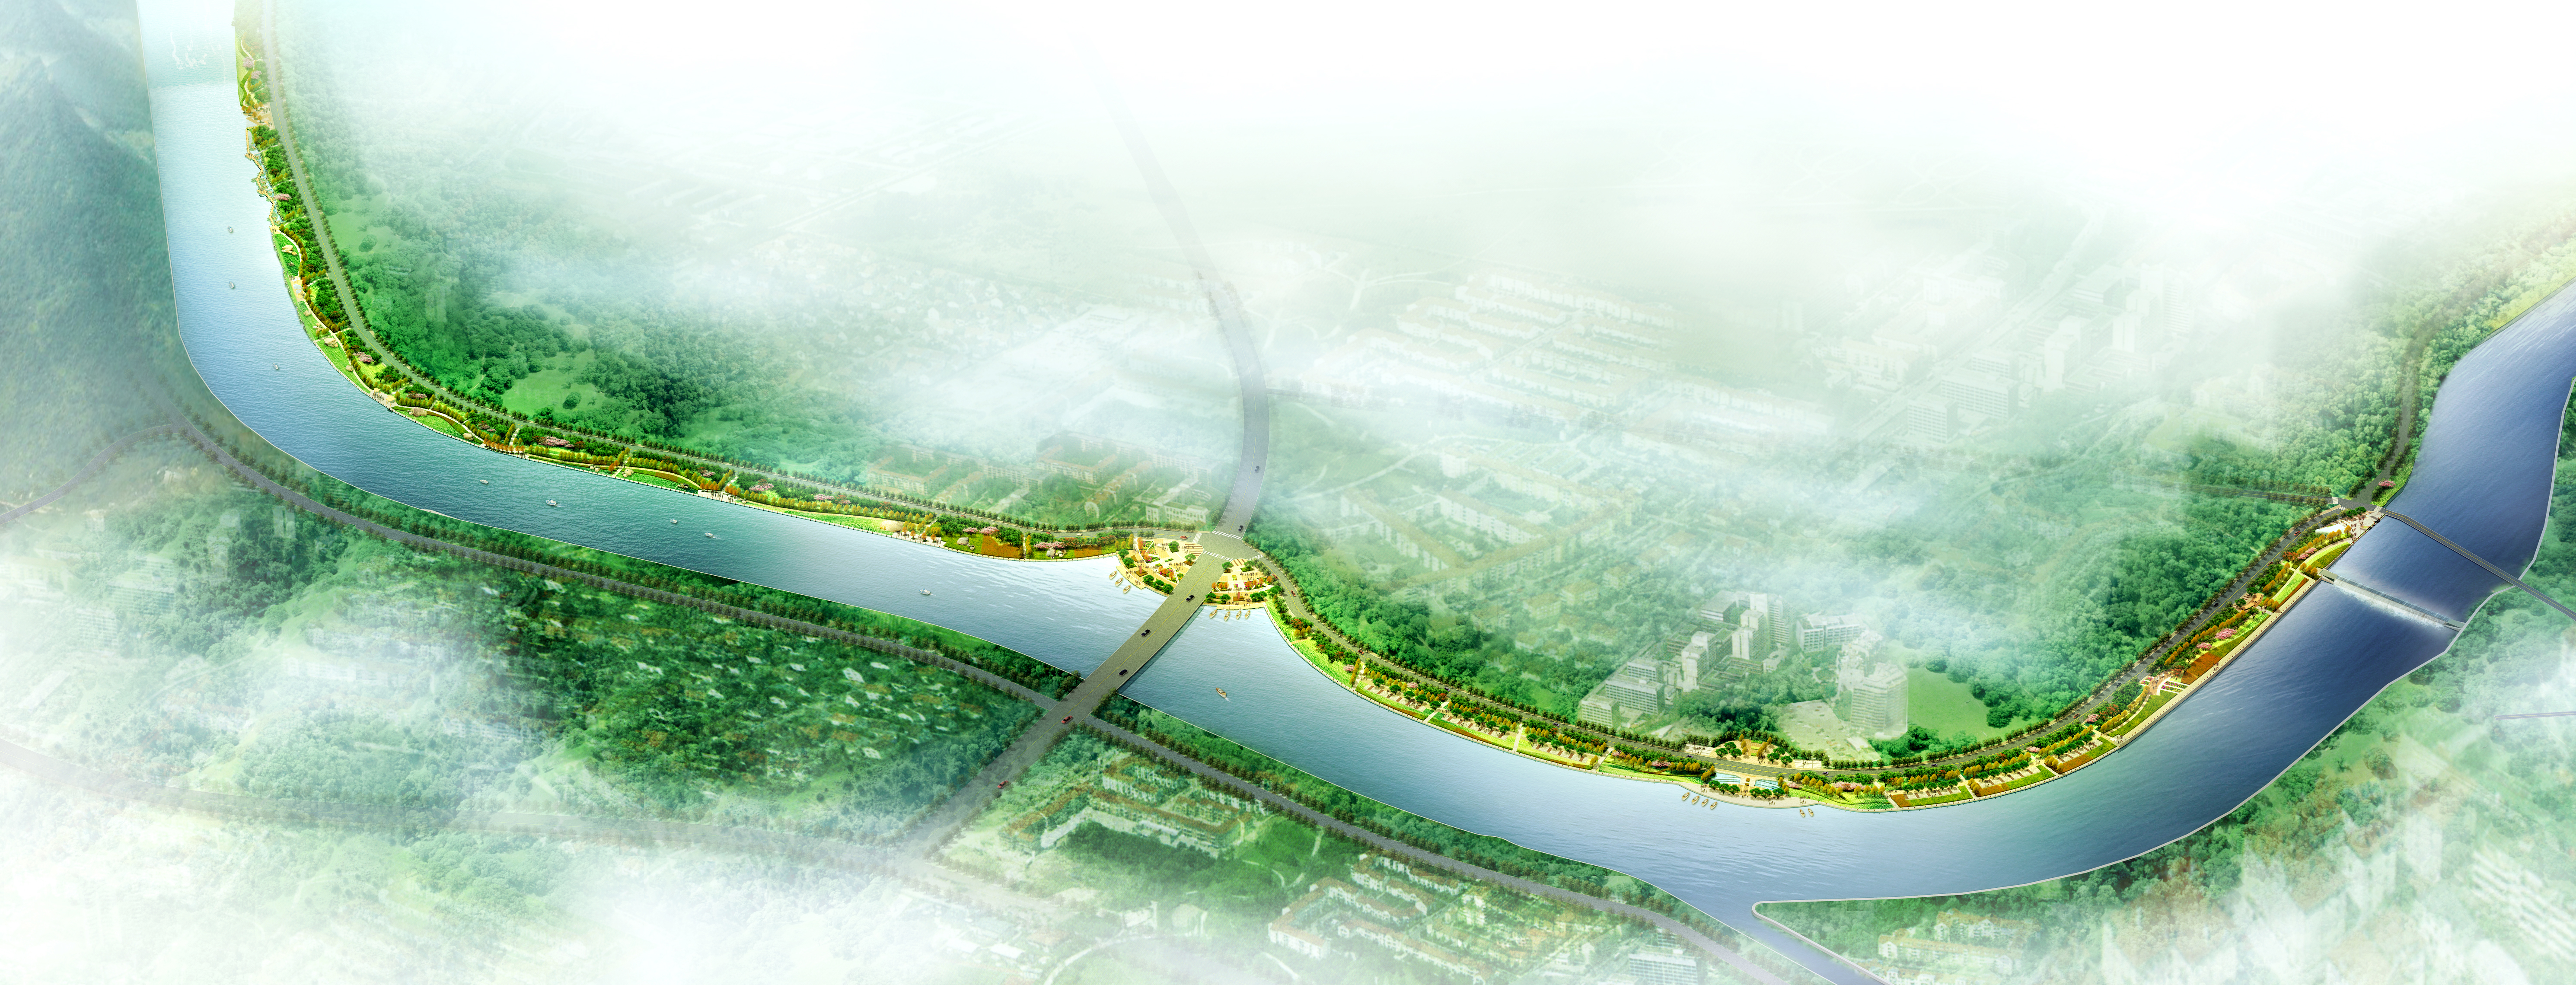 [宁波]防洪工程滨河景观规划设计方案